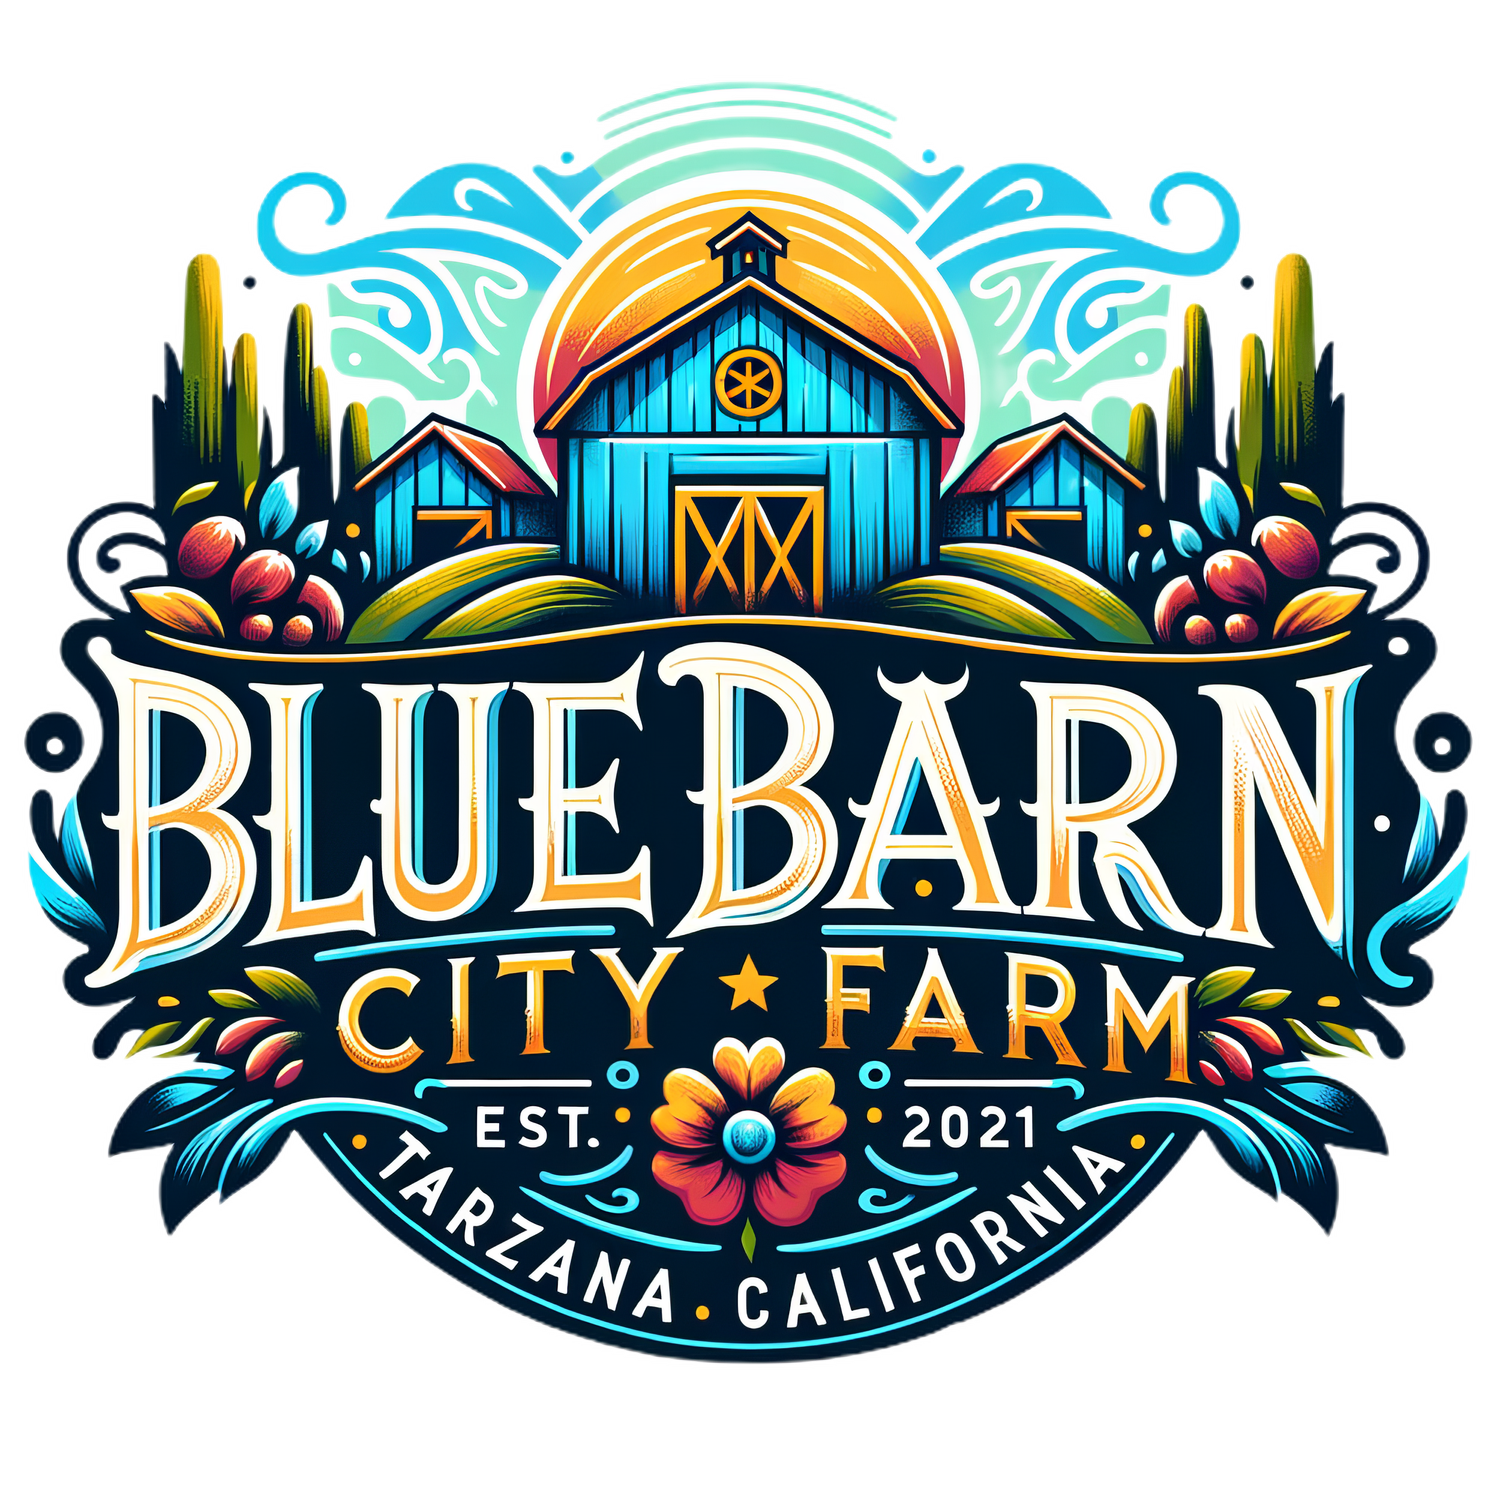 BLUE BARN CITY FARM